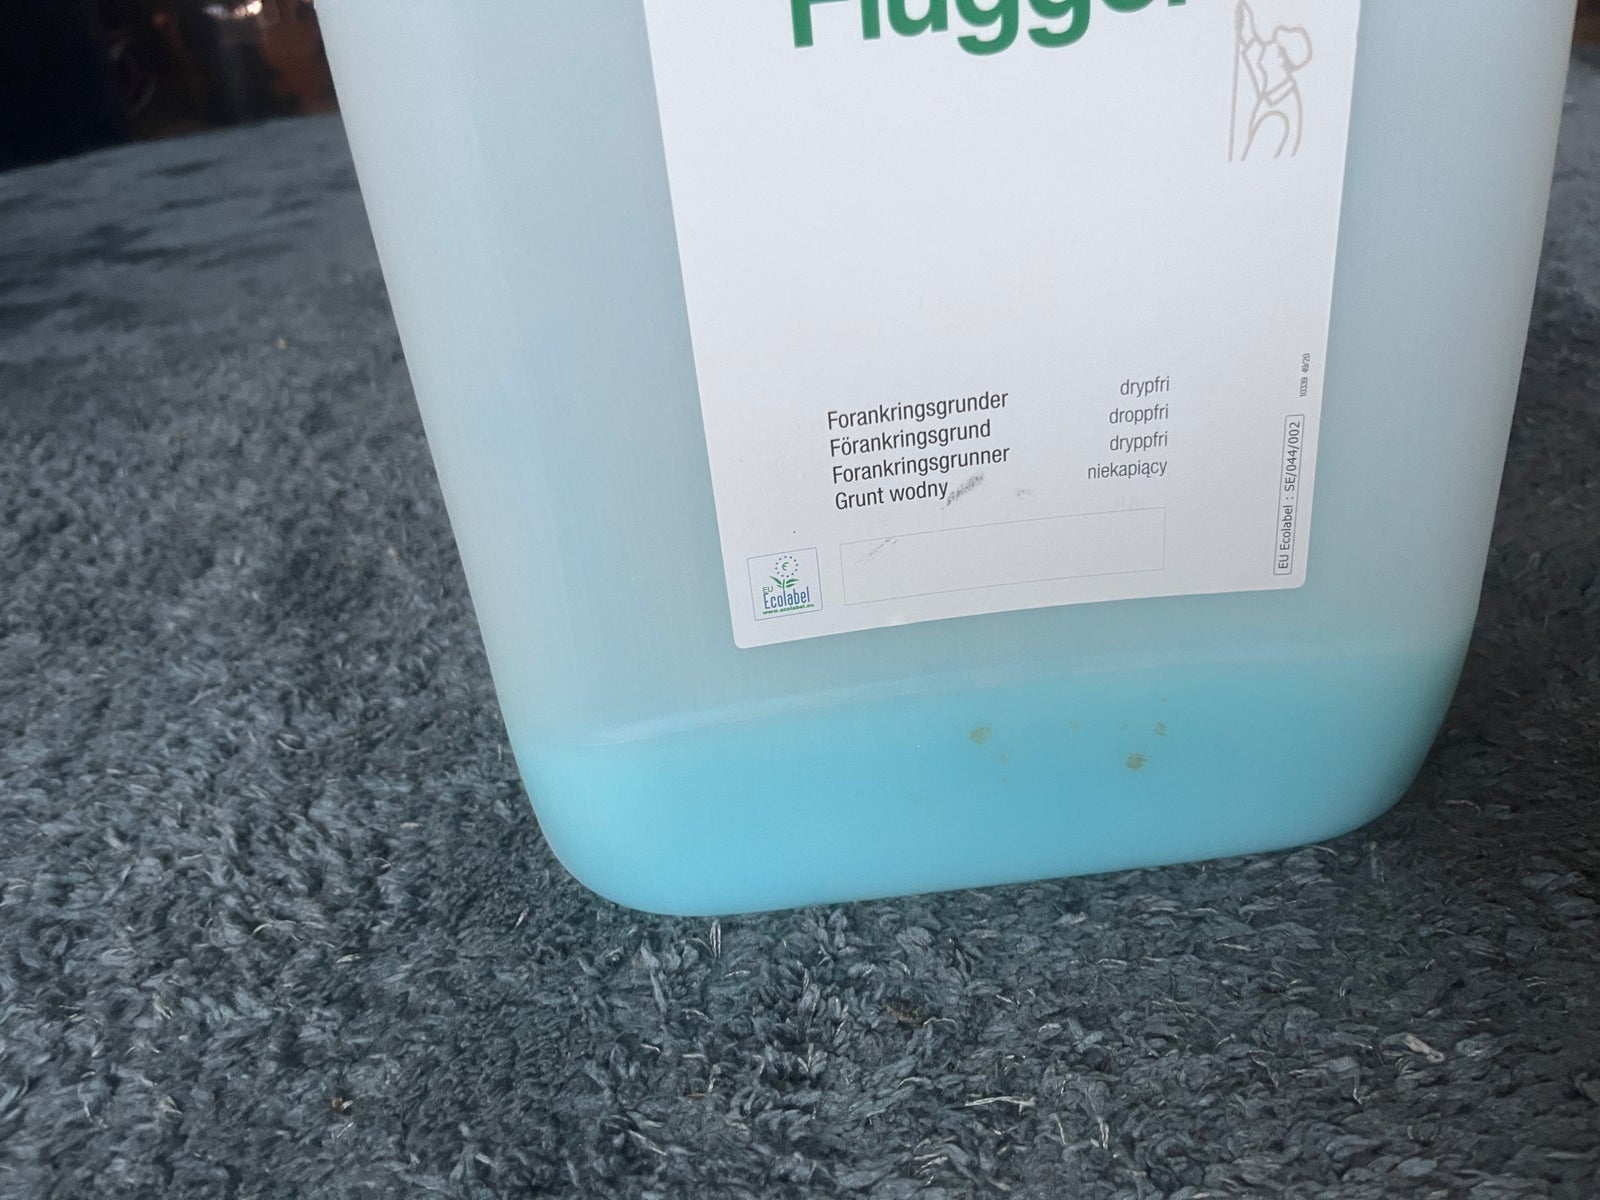 Forankringsgrunder, Flügger, 10 liter